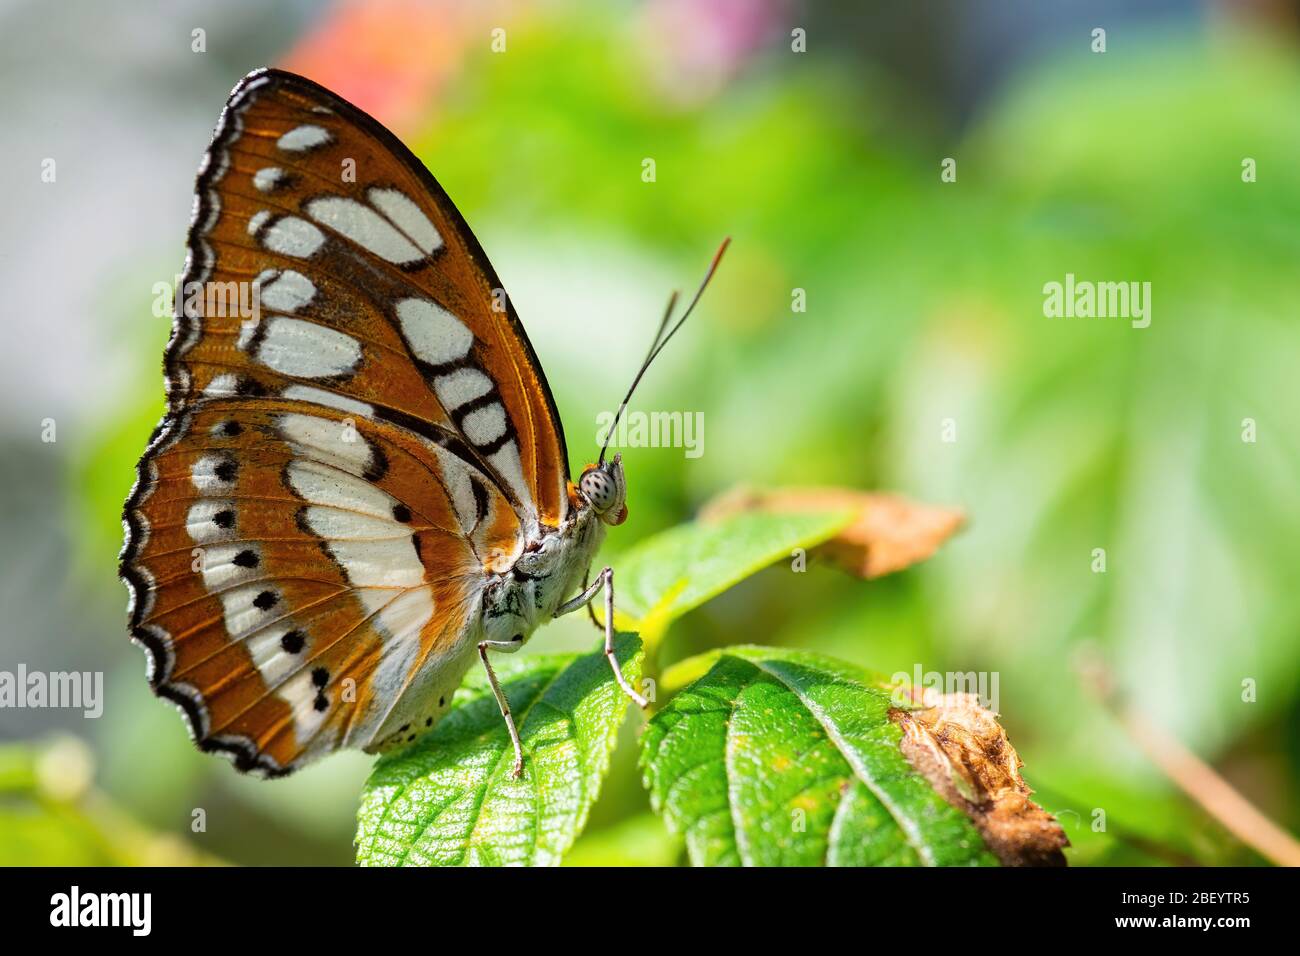 Sergente comune - Athyma perius, bella farfalla marrone e bianca da prati e boschi del Sud-est asiatico, Malesia. Foto Stock